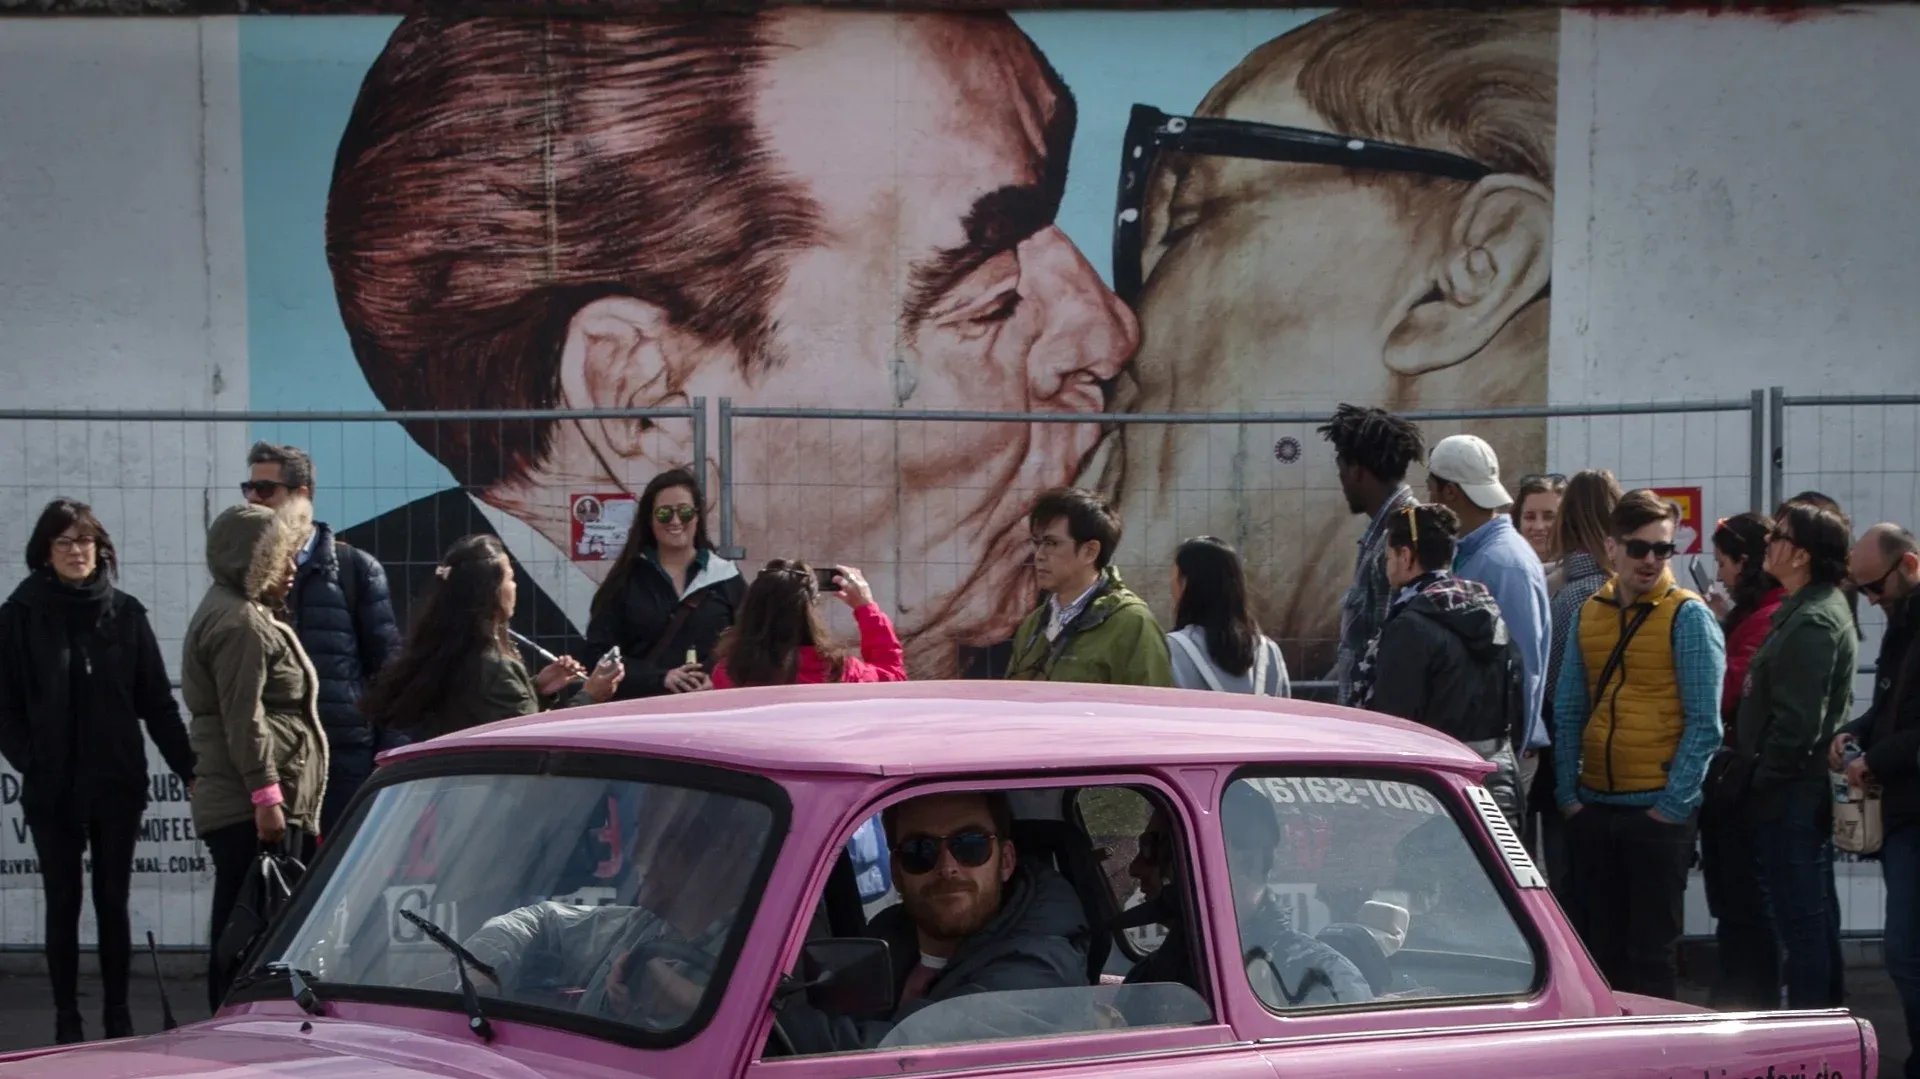 Фрагмент Берлинской стены вдоль улицы Мюленштрассе — знаменитый поцелуй Брежнева и Хонекера. Фото: Станислав Красильников / ТАCC